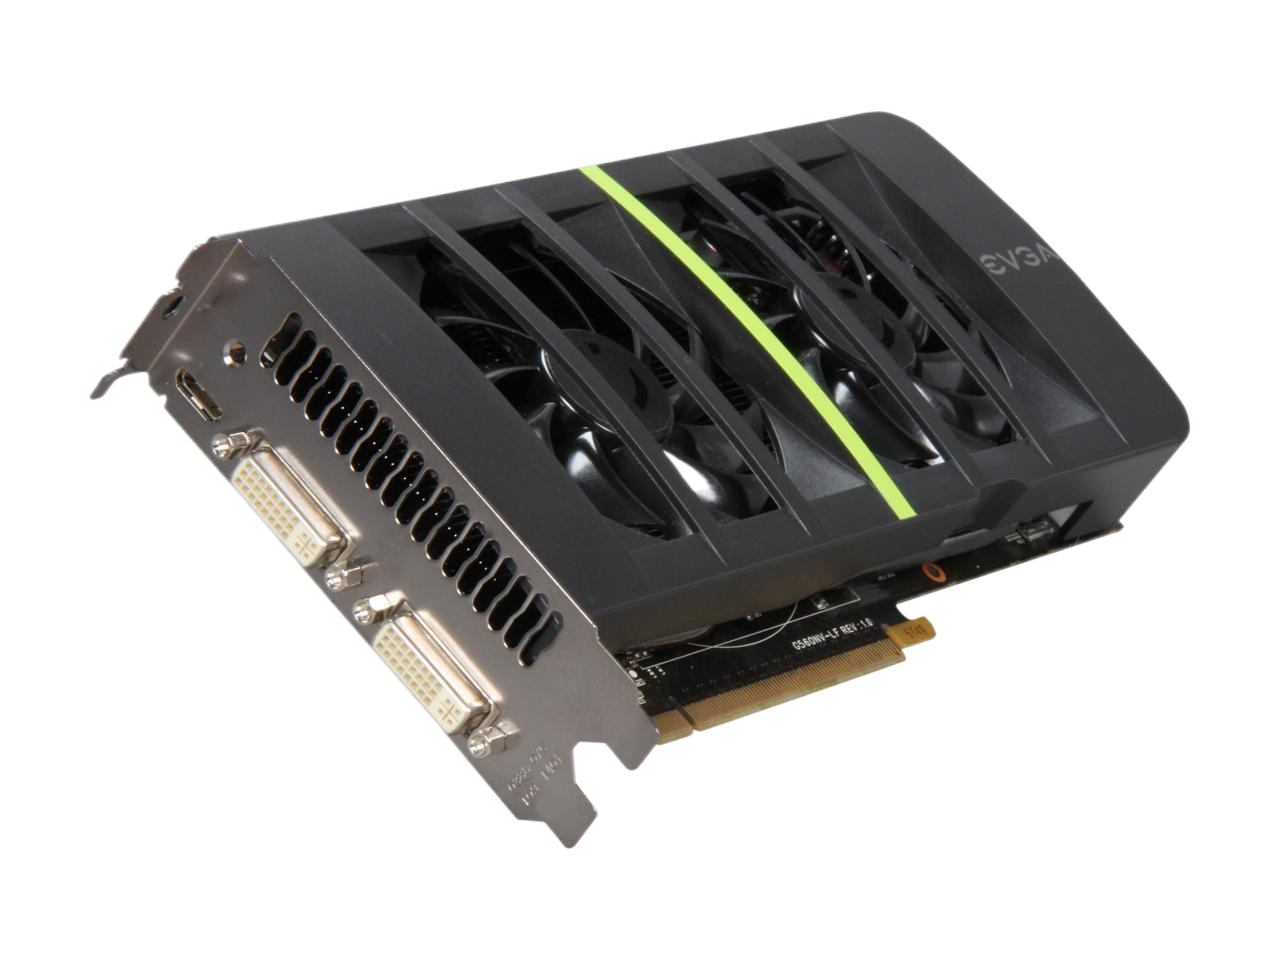 EVGA SuperClocked GeForce GTX 560 Ti (Fermi) 1GB 256-bit GDDR5 PCI Express 2.0 x16 HDCP Ready SLI Support Video Card 01G-P3-1567-KR